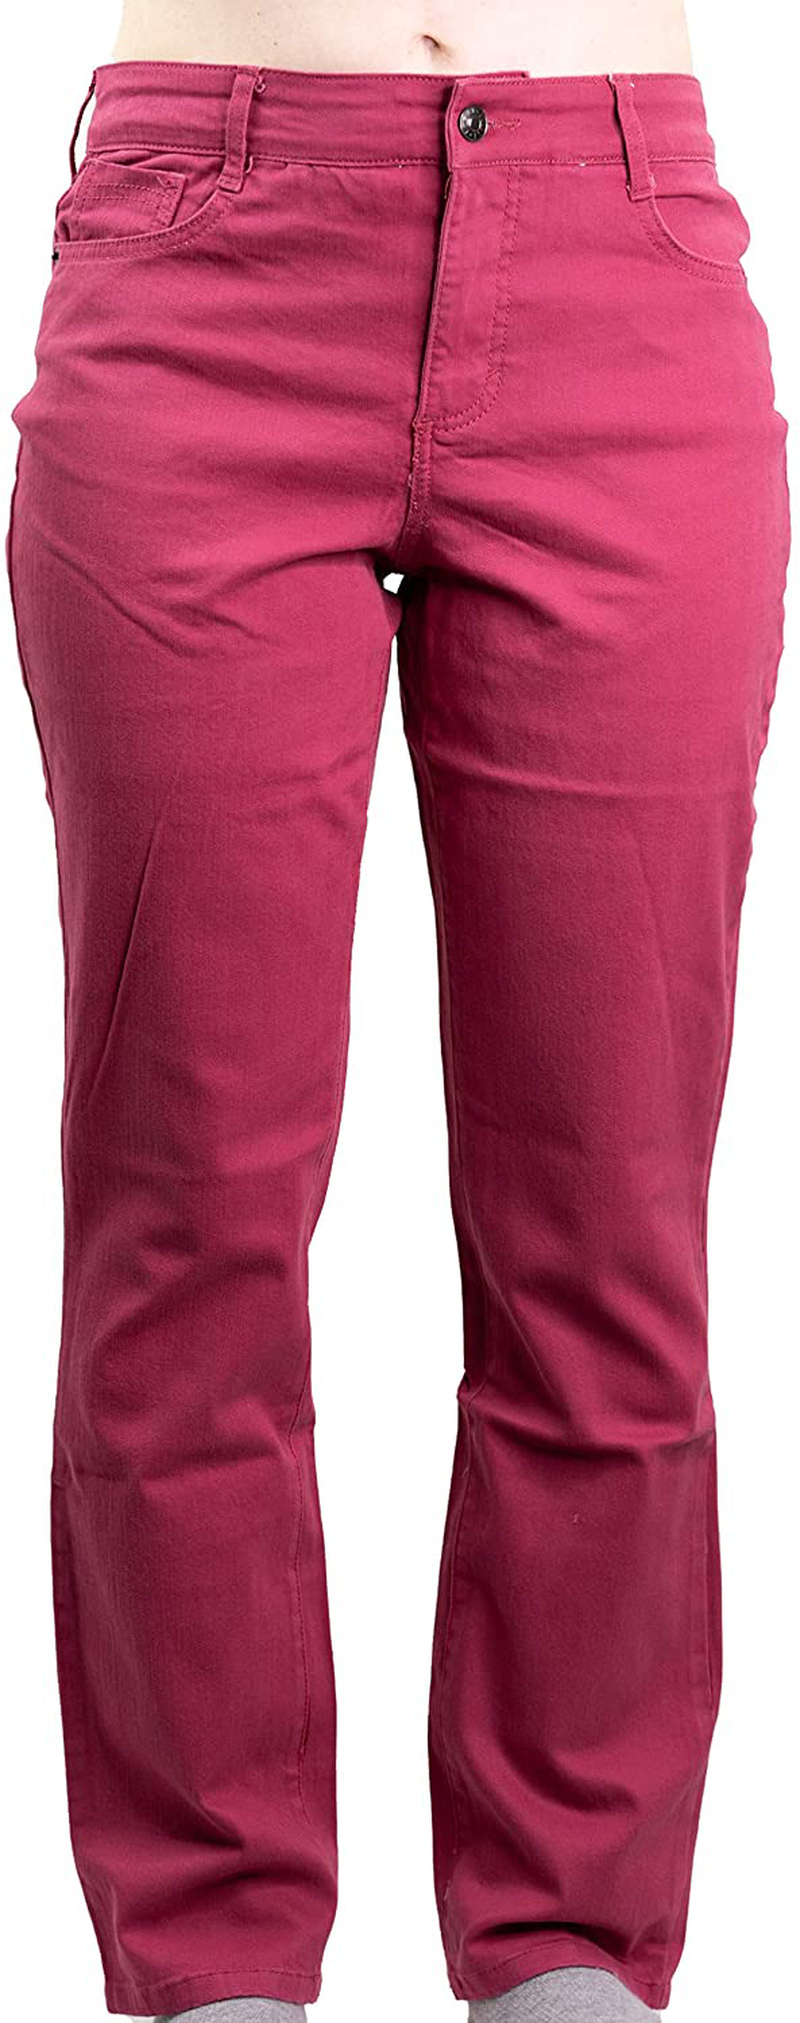 Bandolino Women's Fashion Twill Color Jeans